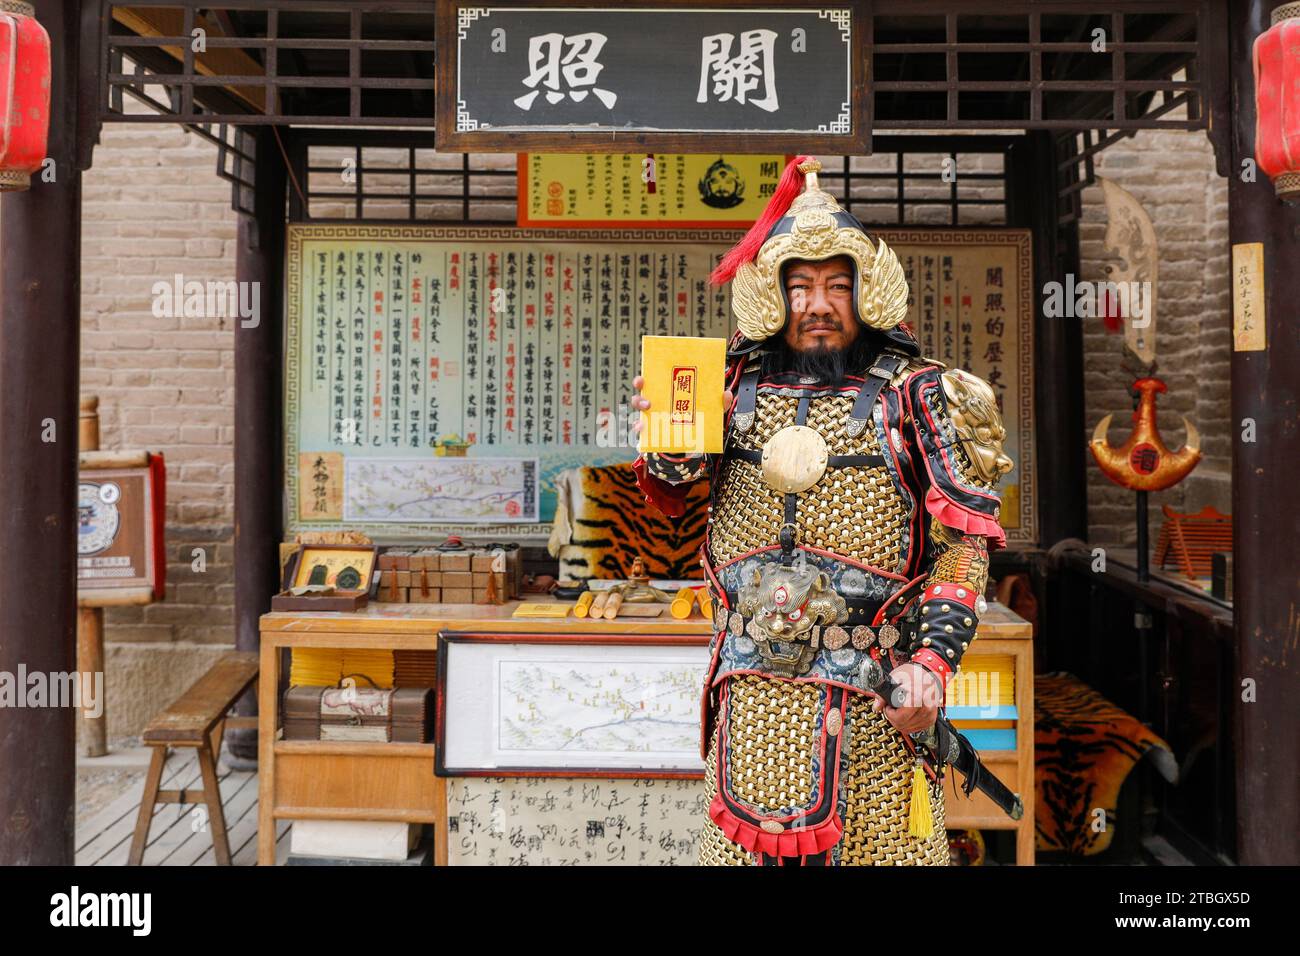 (231207) -- JIAYUGUAN, 7 dicembre 2023 (Xinhua) -- li Sen mostra gli antichi "visti" nella sua stalla nell'area panoramica del passo Jiayu nella città di Jiayuguan, provincia del Gansu della Cina nord-occidentale, 26 settembre 2023. Li Sen, 43 anni, si guadagna da vivere interpretando il ruolo di un antico "generale" nell'area panoramica del passo Jiayu nella città di Jiayuguan, nella provincia del Gansu della Cina nord-occidentale. I visitatori possono acquistare antichi "visti" presso la sua bancarella. Questi documenti sono progettati da li e costituiscono una parte essenziale del gioco di ruolo, consentendo ai turisti di tornare nell'antica Cina. Guardando al futuro, li prevede di organizzare sistematicamente il Foto Stock